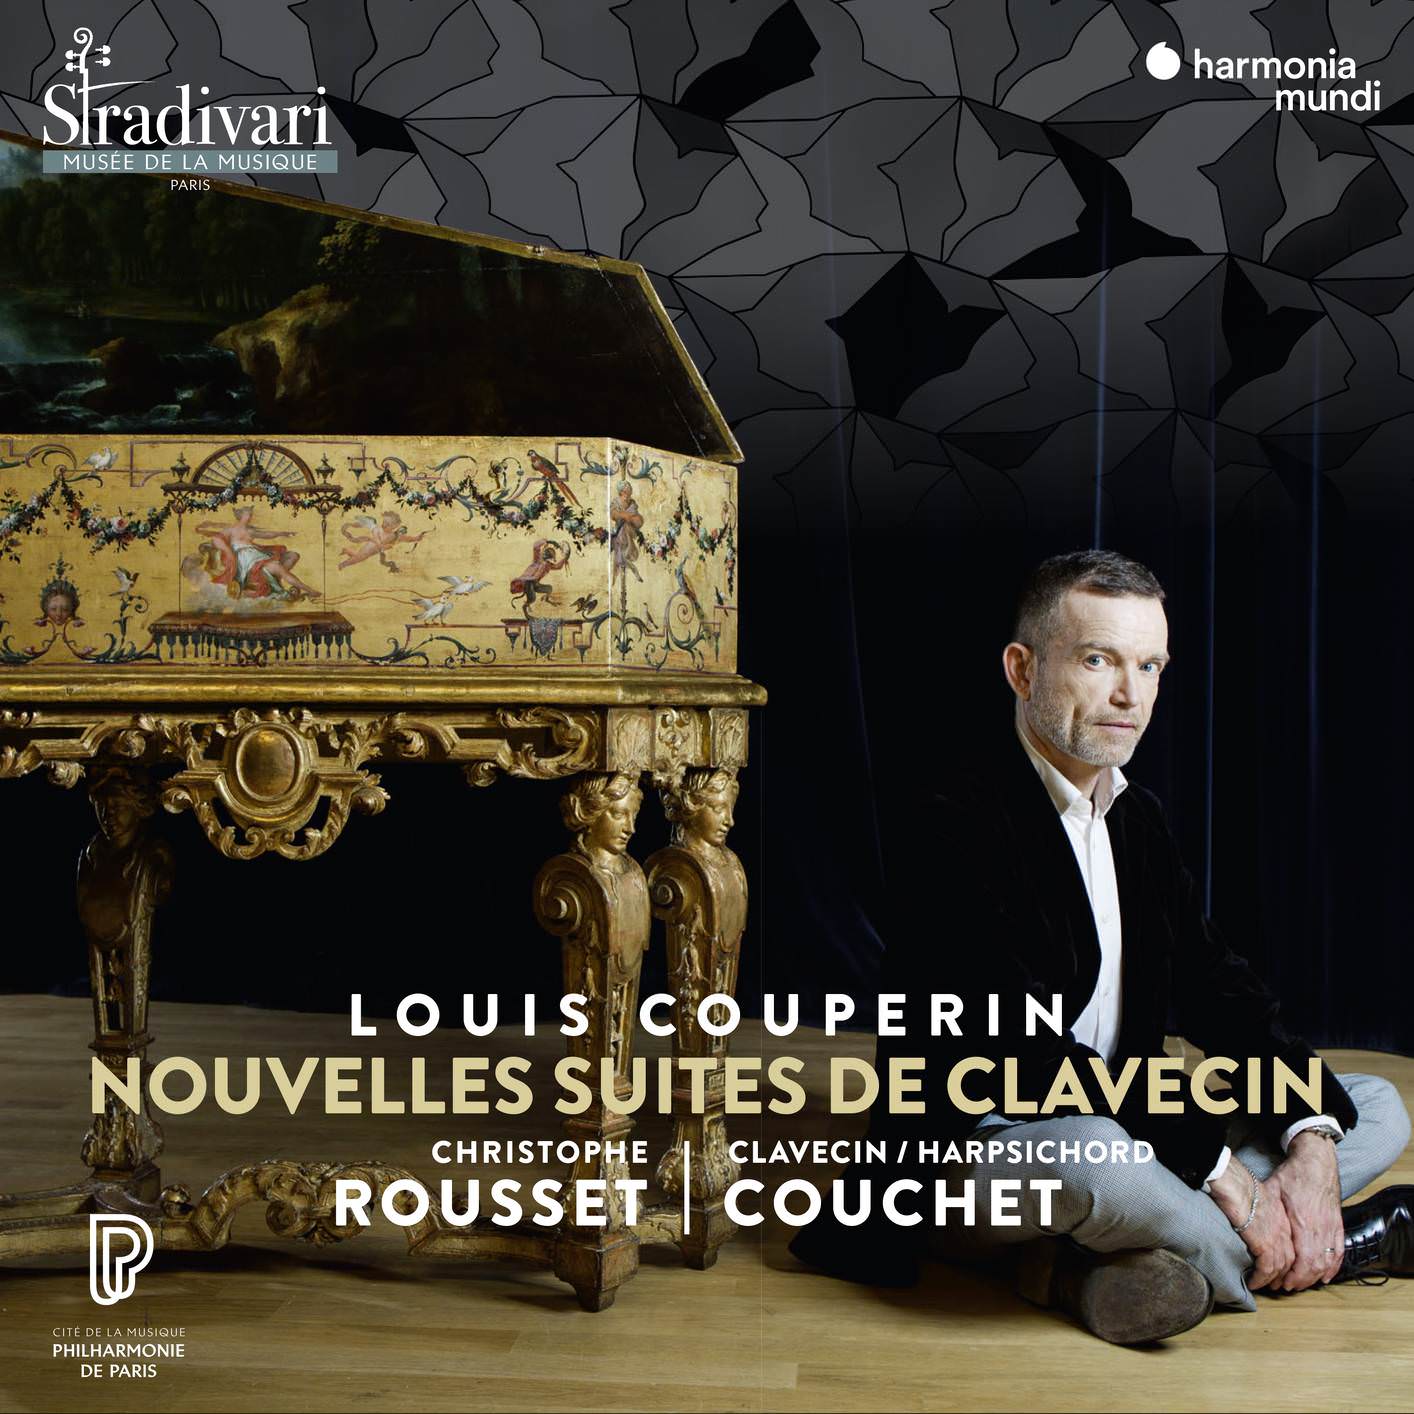 Christophe Rousset - Louis Couperin: Nouvelles Suites de clavecin (2018) [FLAC 24bit/96kHz]